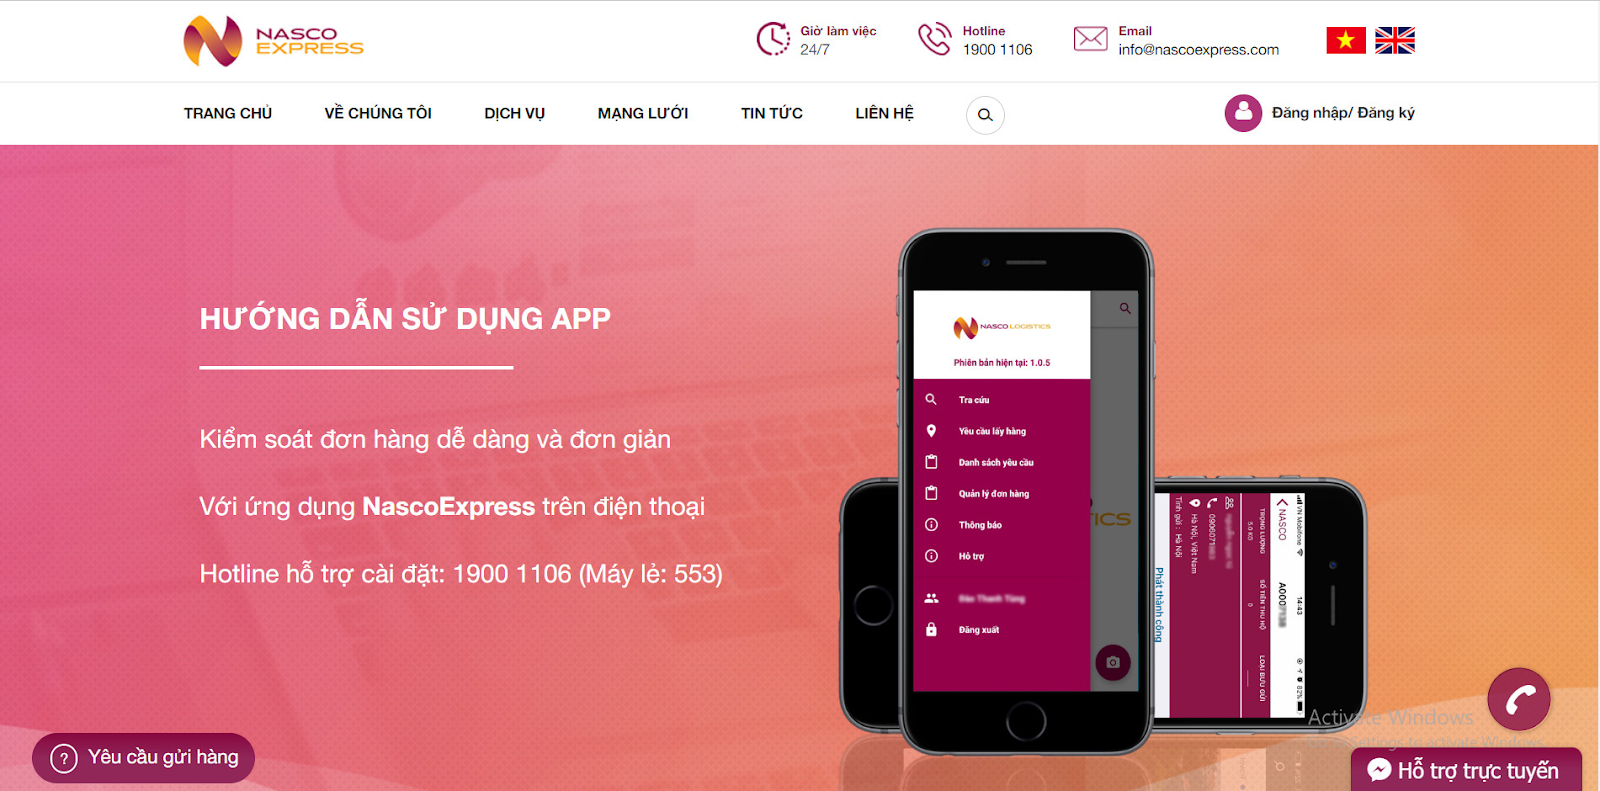 App Nasco Express thiết kế đơn giản, tiện lợi cho người dùng